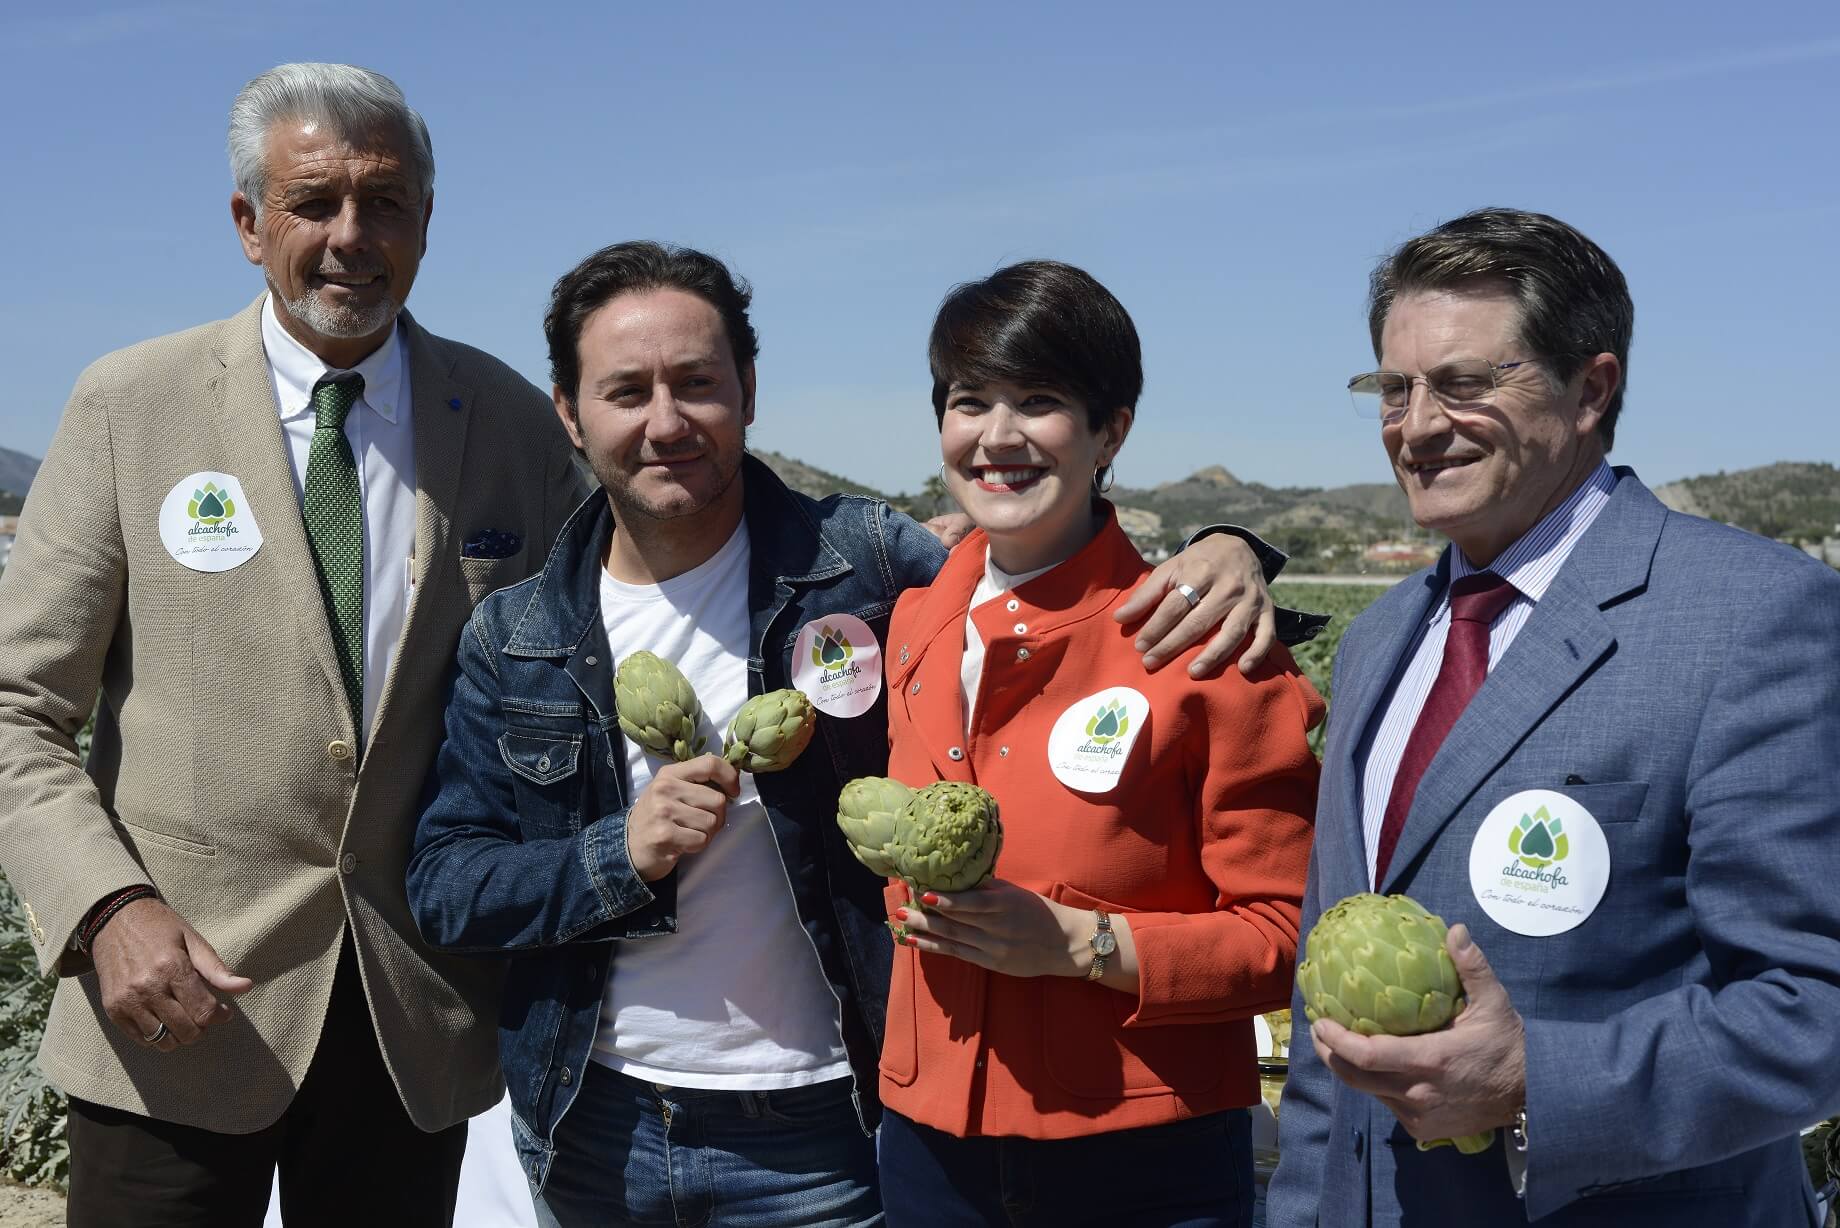 Alcachofa de España ha organizado esta mañana el acto del corte del segundo colmo de esta verdura en el llamado El colmo de los colmos.